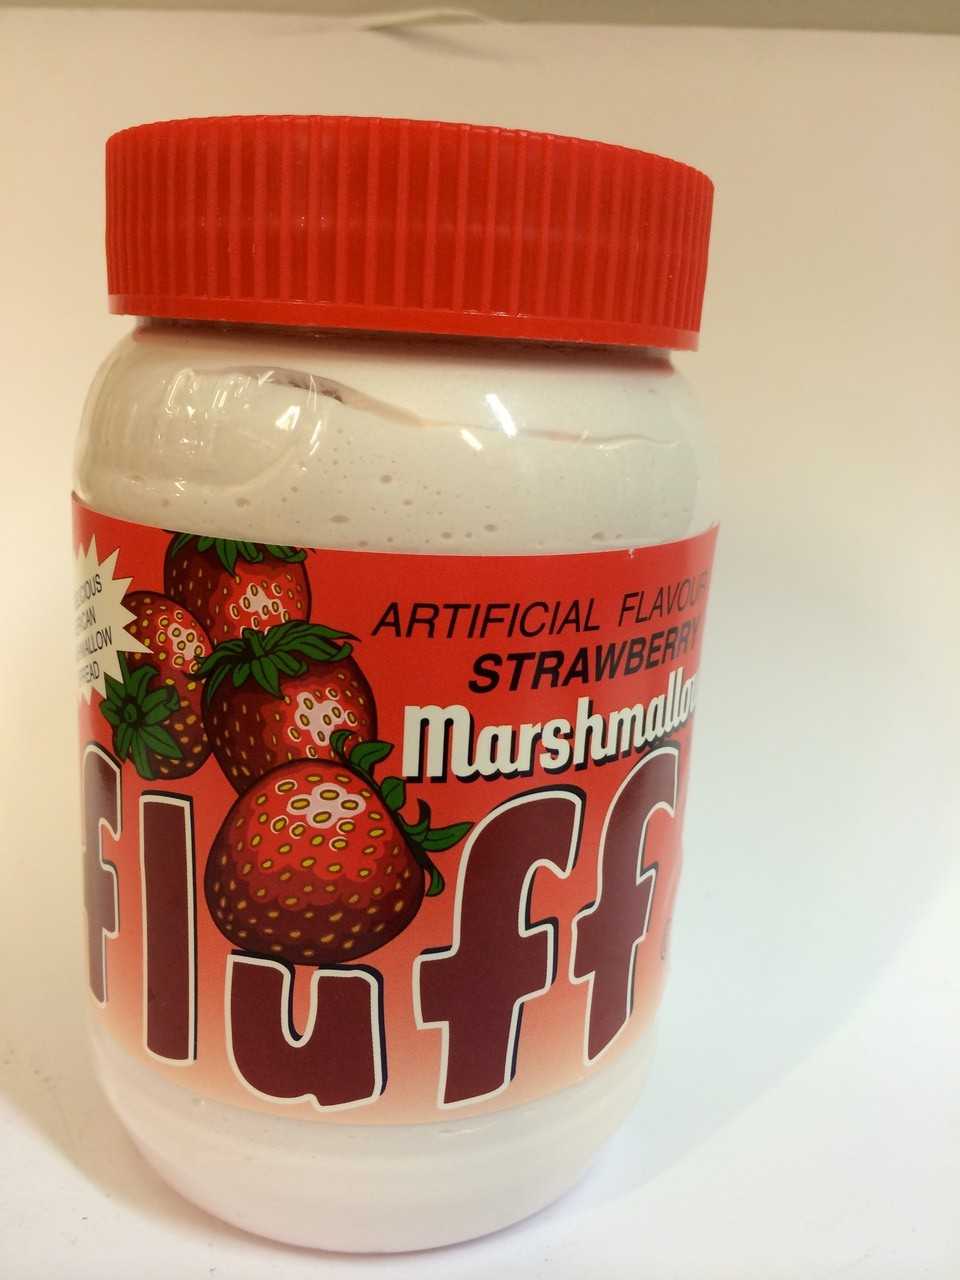 Marshmallow Fluff Strawberry,213g,typisch,amerikanischer Brotaufstrich 